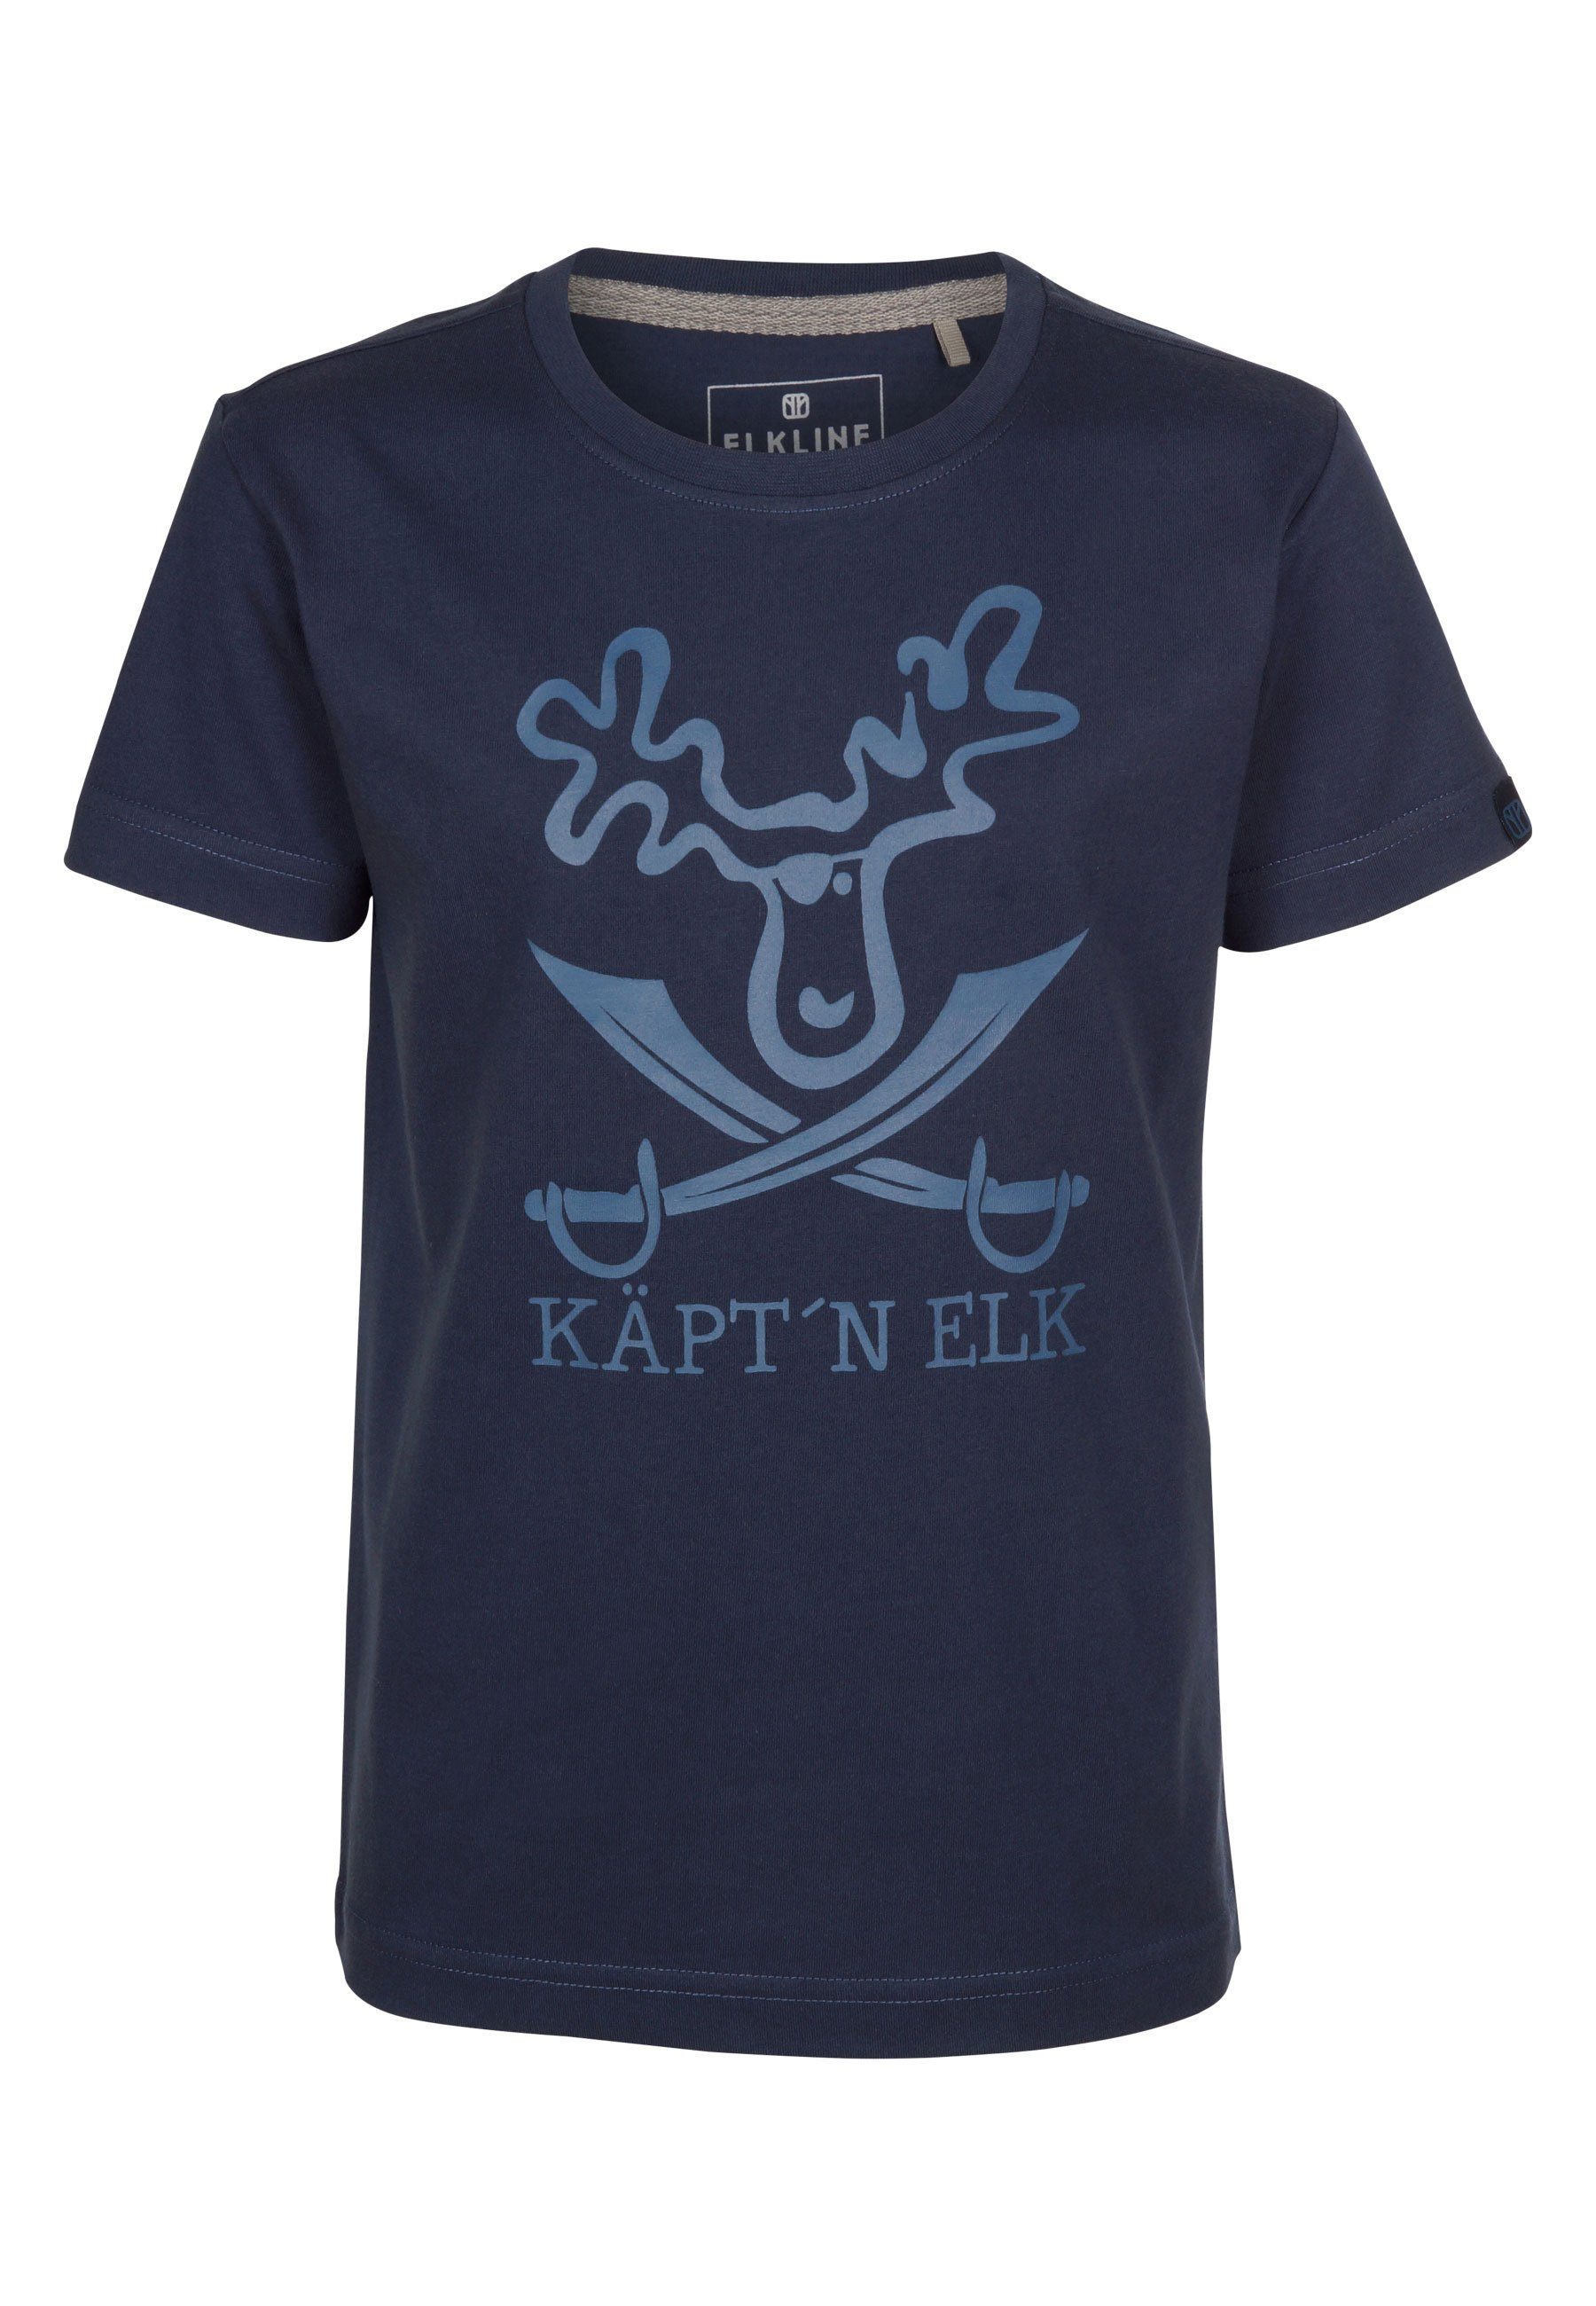 Elkline T-Shirt Schatzinsel Elch Piraten Brust Print darkblue